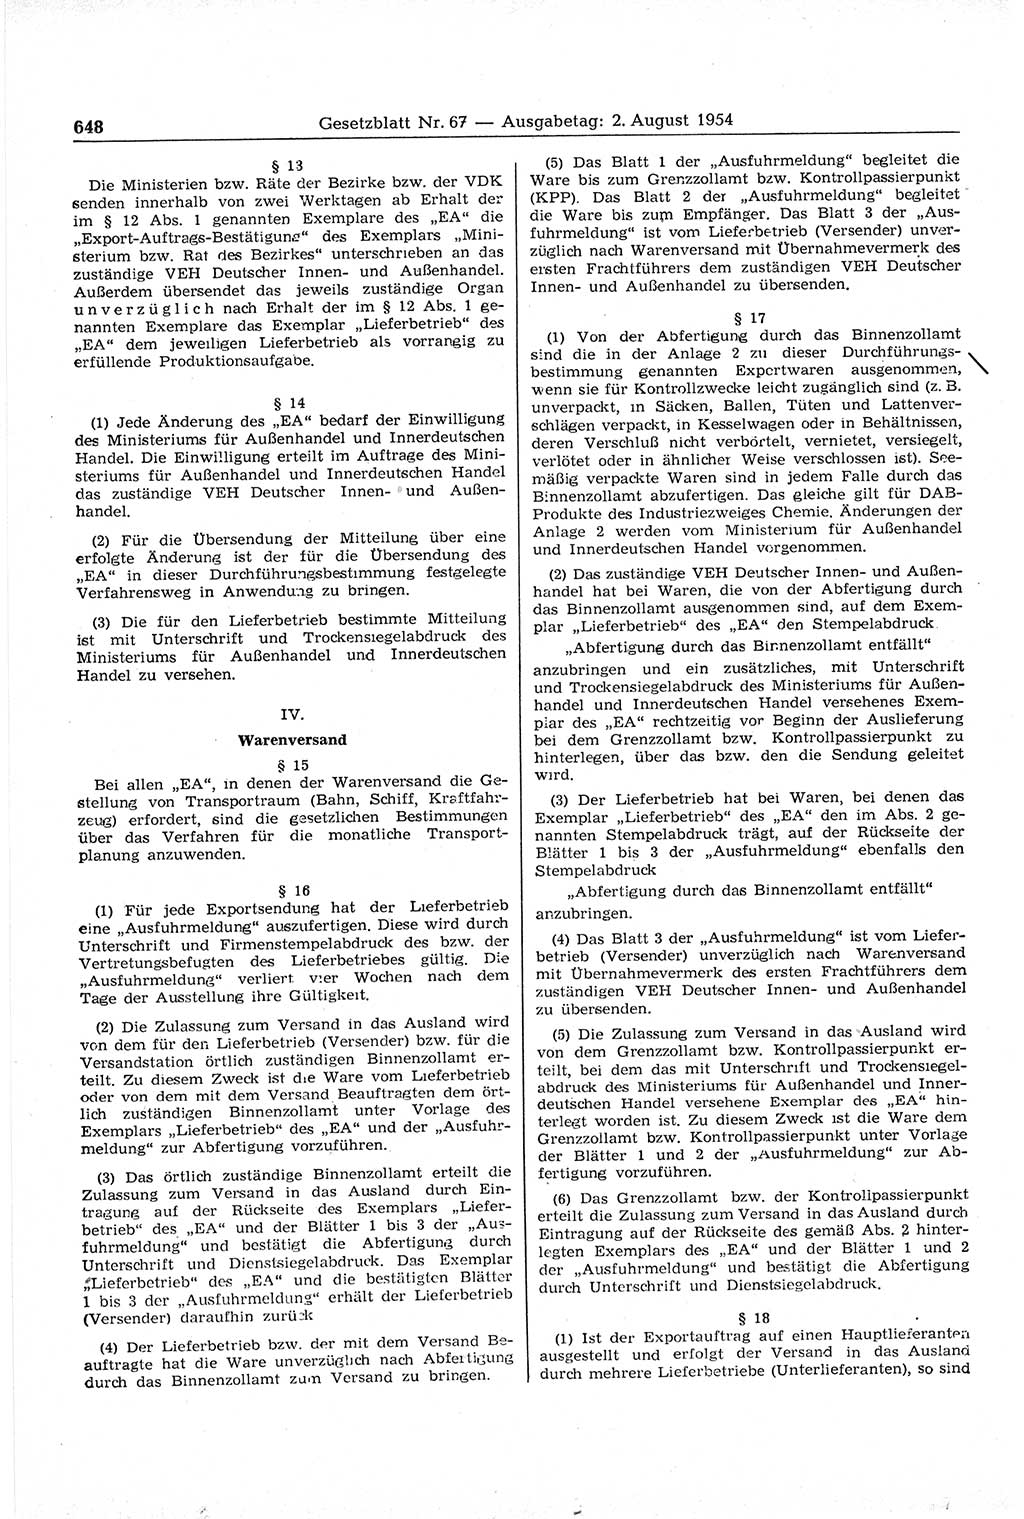 Gesetzblatt (GBl.) der Deutschen Demokratischen Republik (DDR) 1954, Seite 648 (GBl. DDR 1954, S. 648)